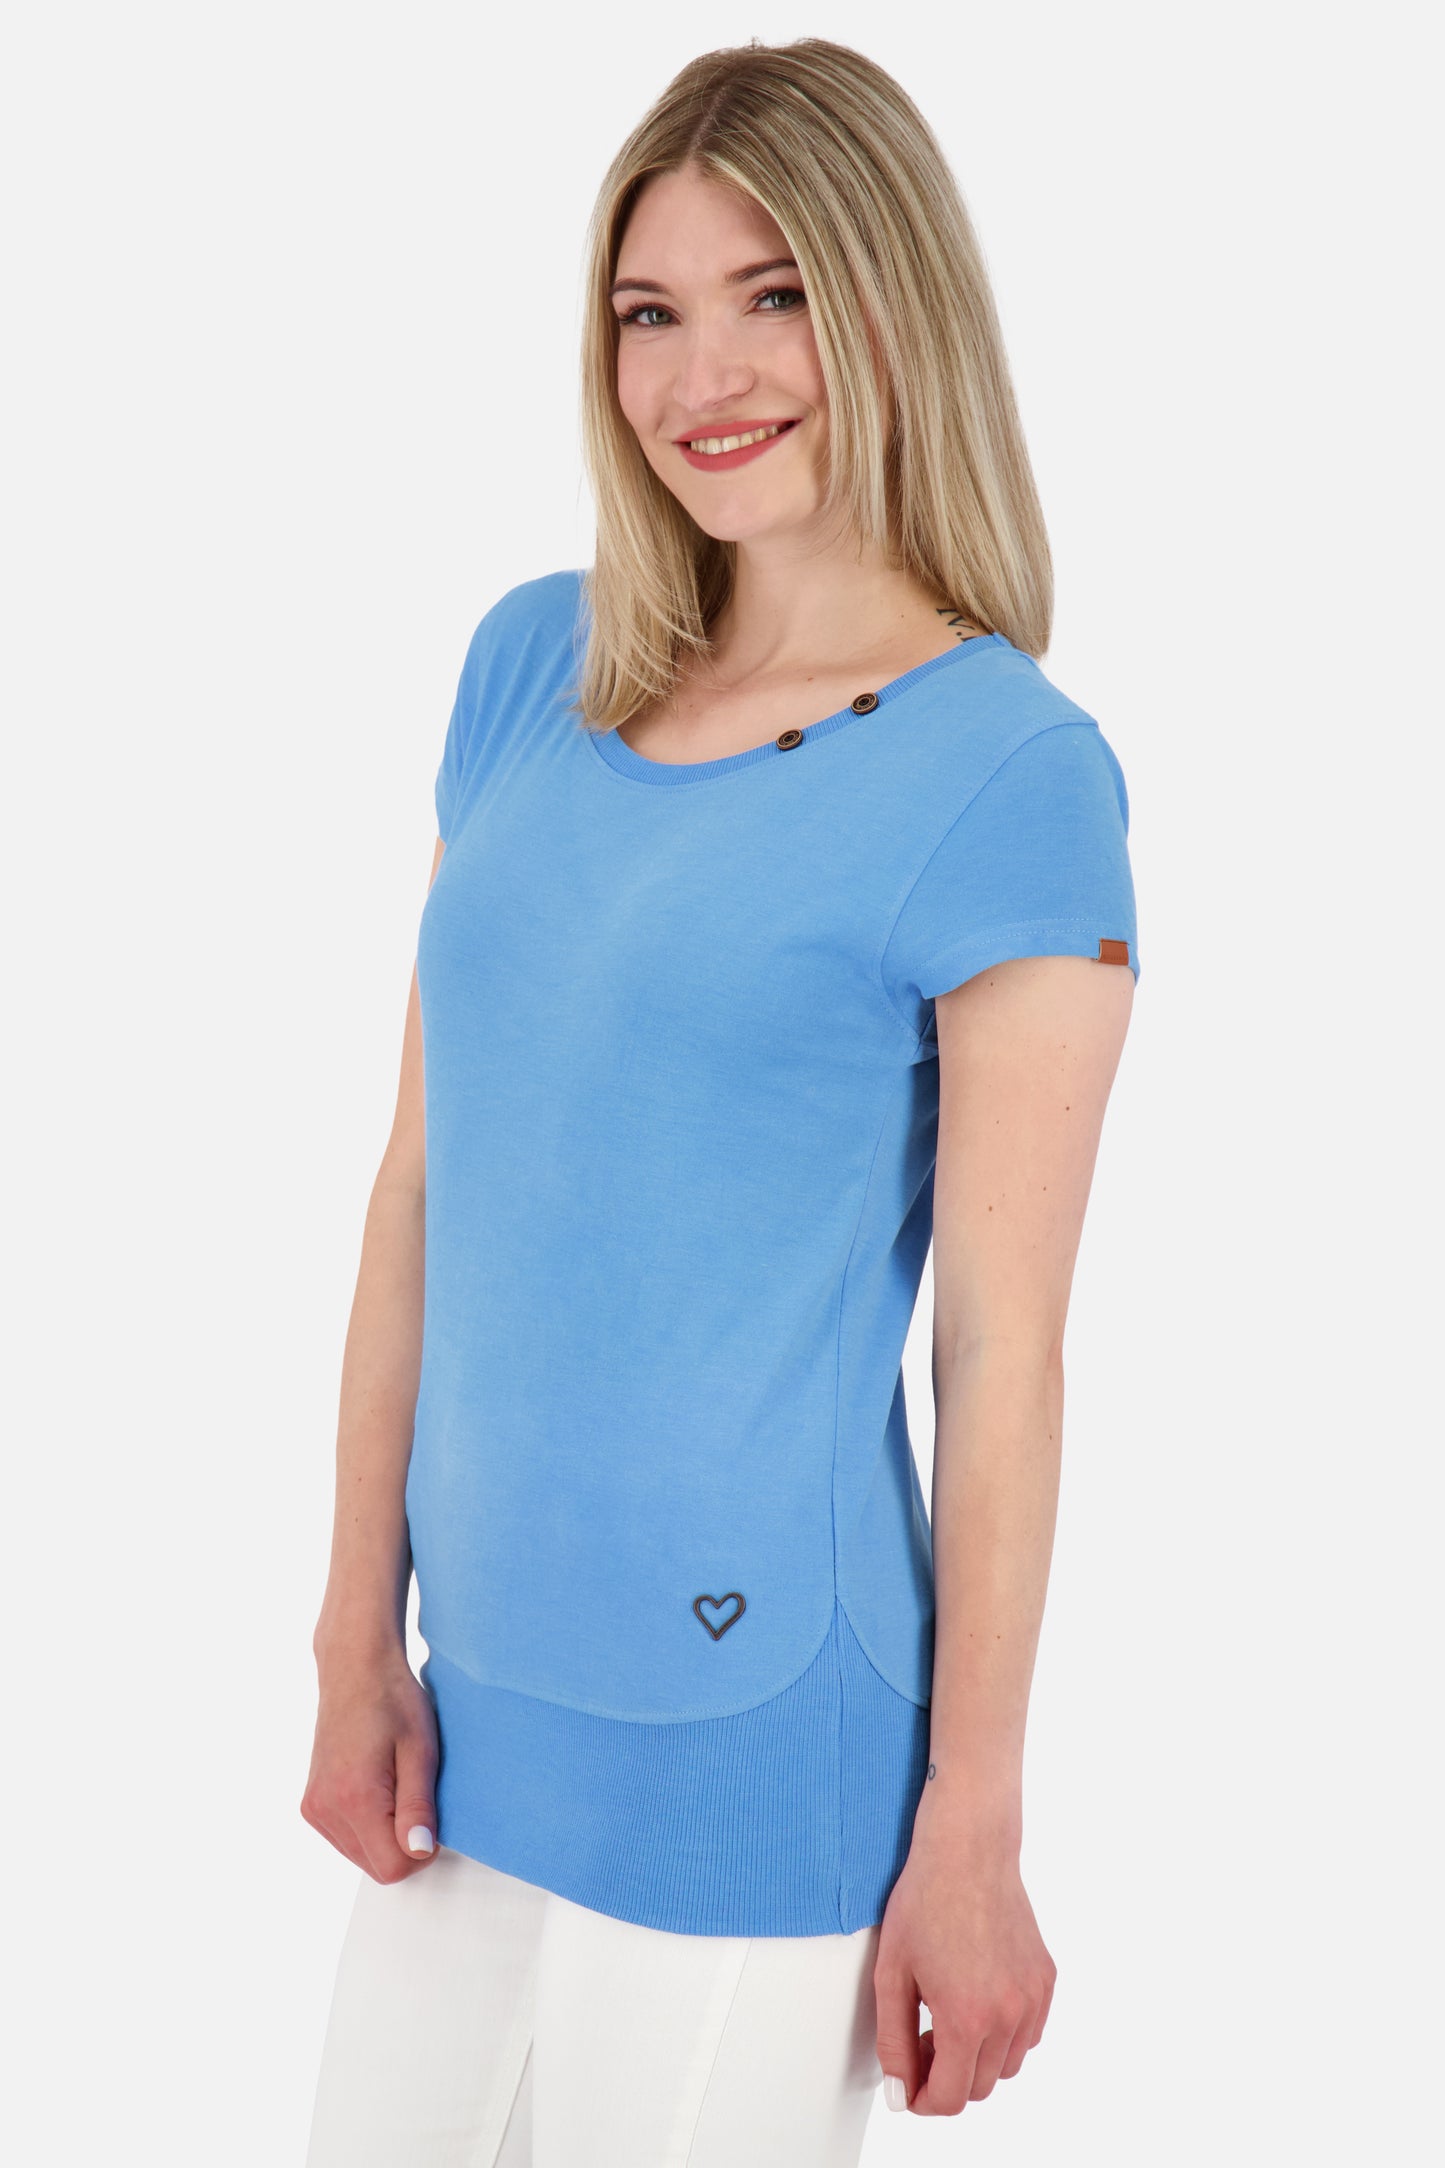 CocoAK A T-Shirt von Alife and Kickin: Farbenfroh und modisch Blau